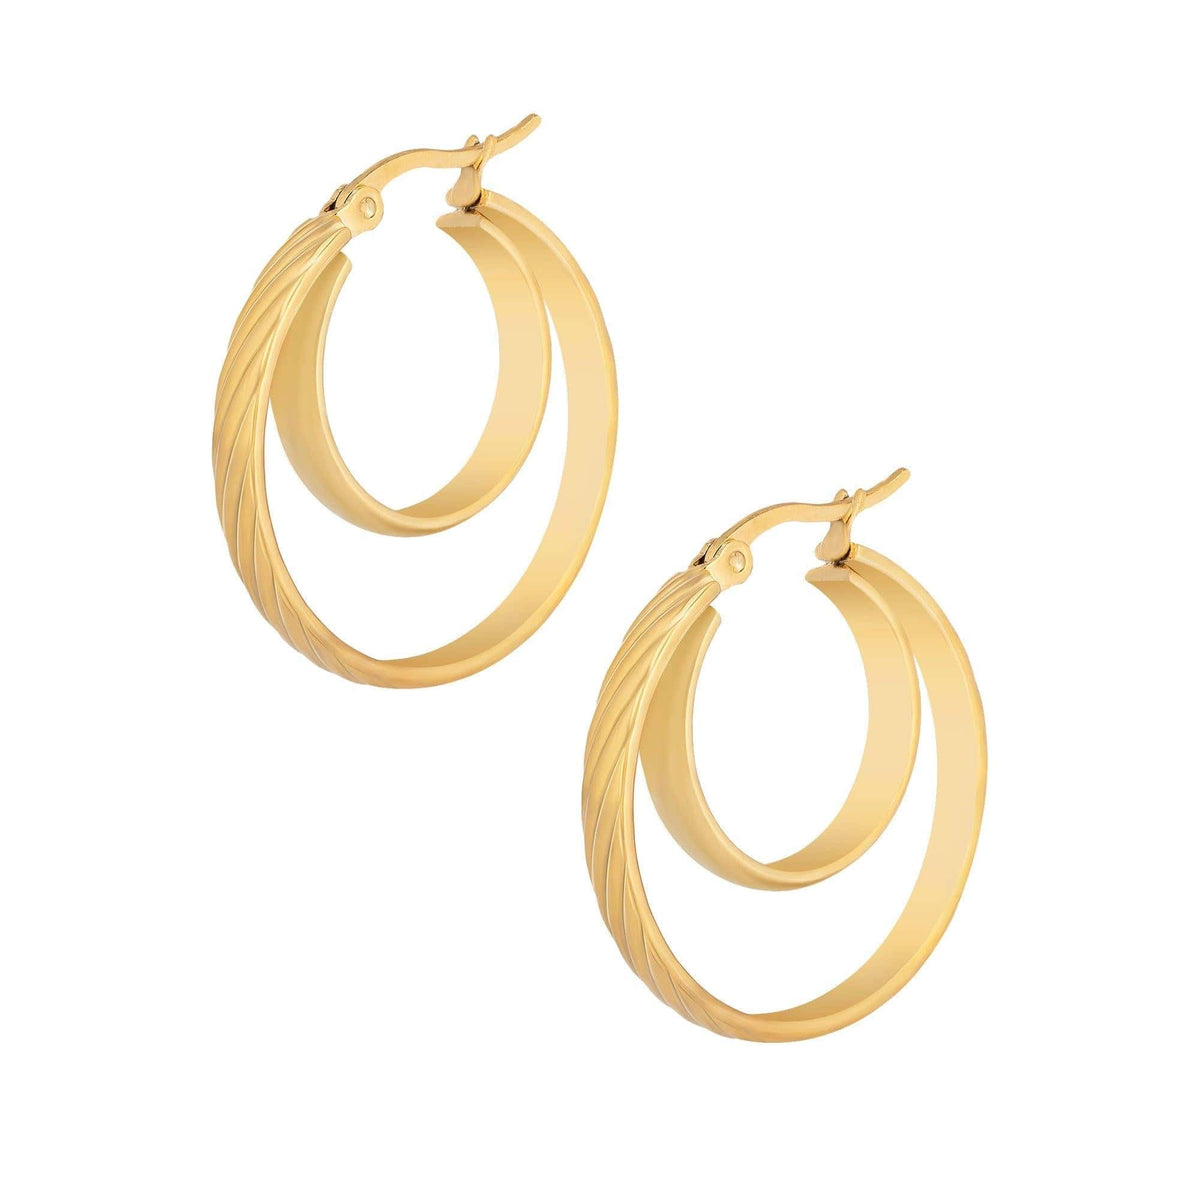 BohoMoon Stainless Steel Isobel Hoop Earrings Gold